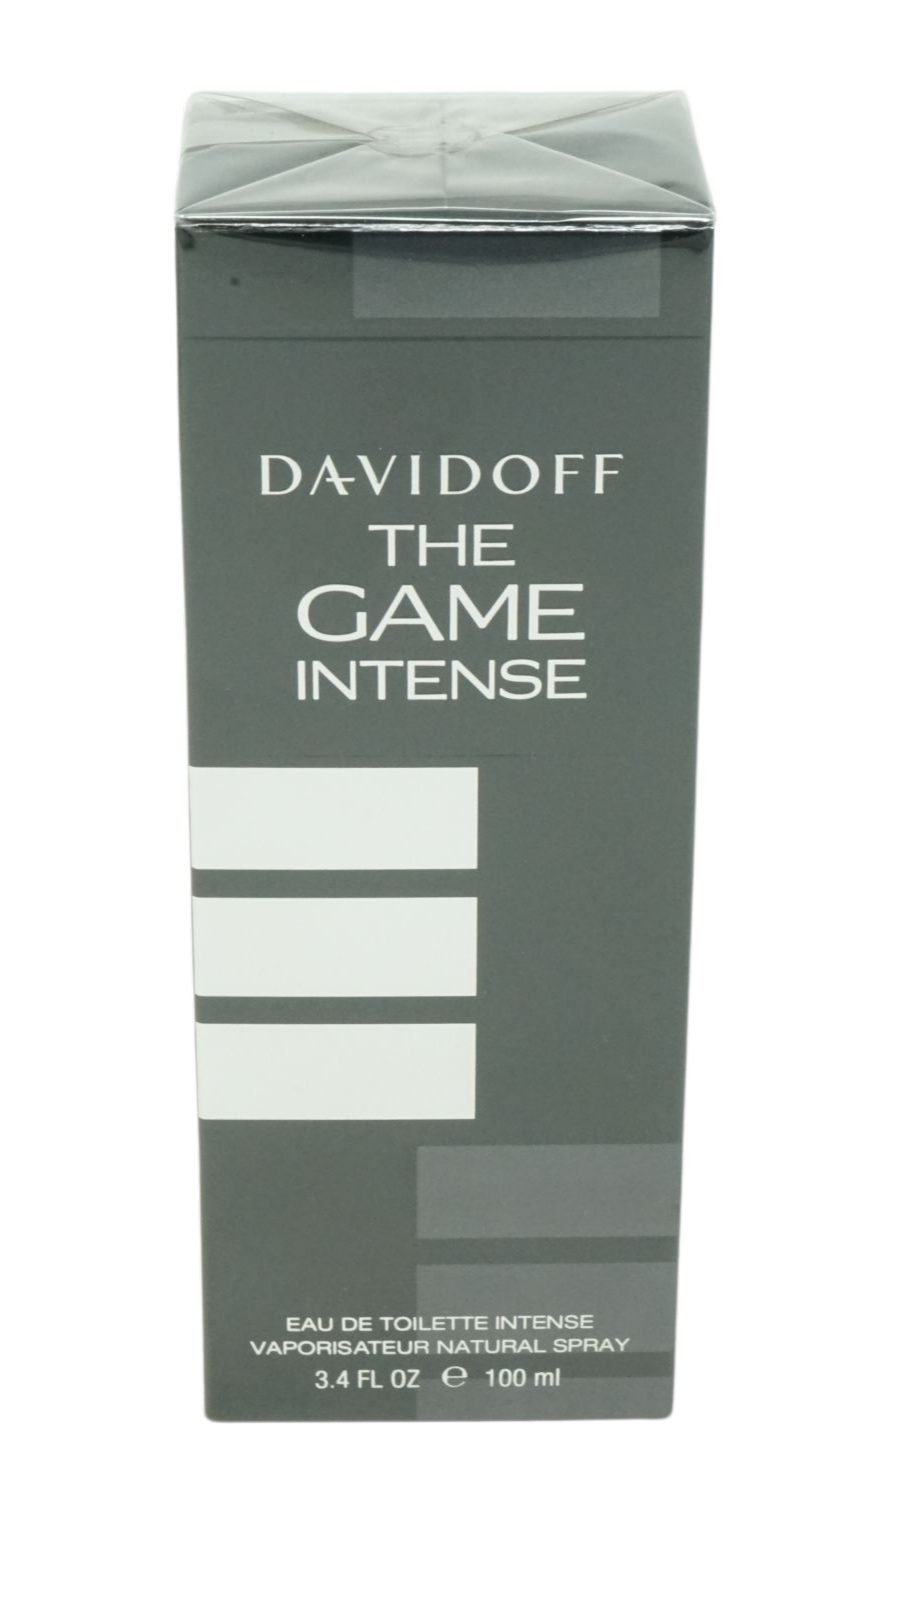 Davidoff de The 100ml Eau Körperpflegeduft Toilette Intense DAVIDOFF Game